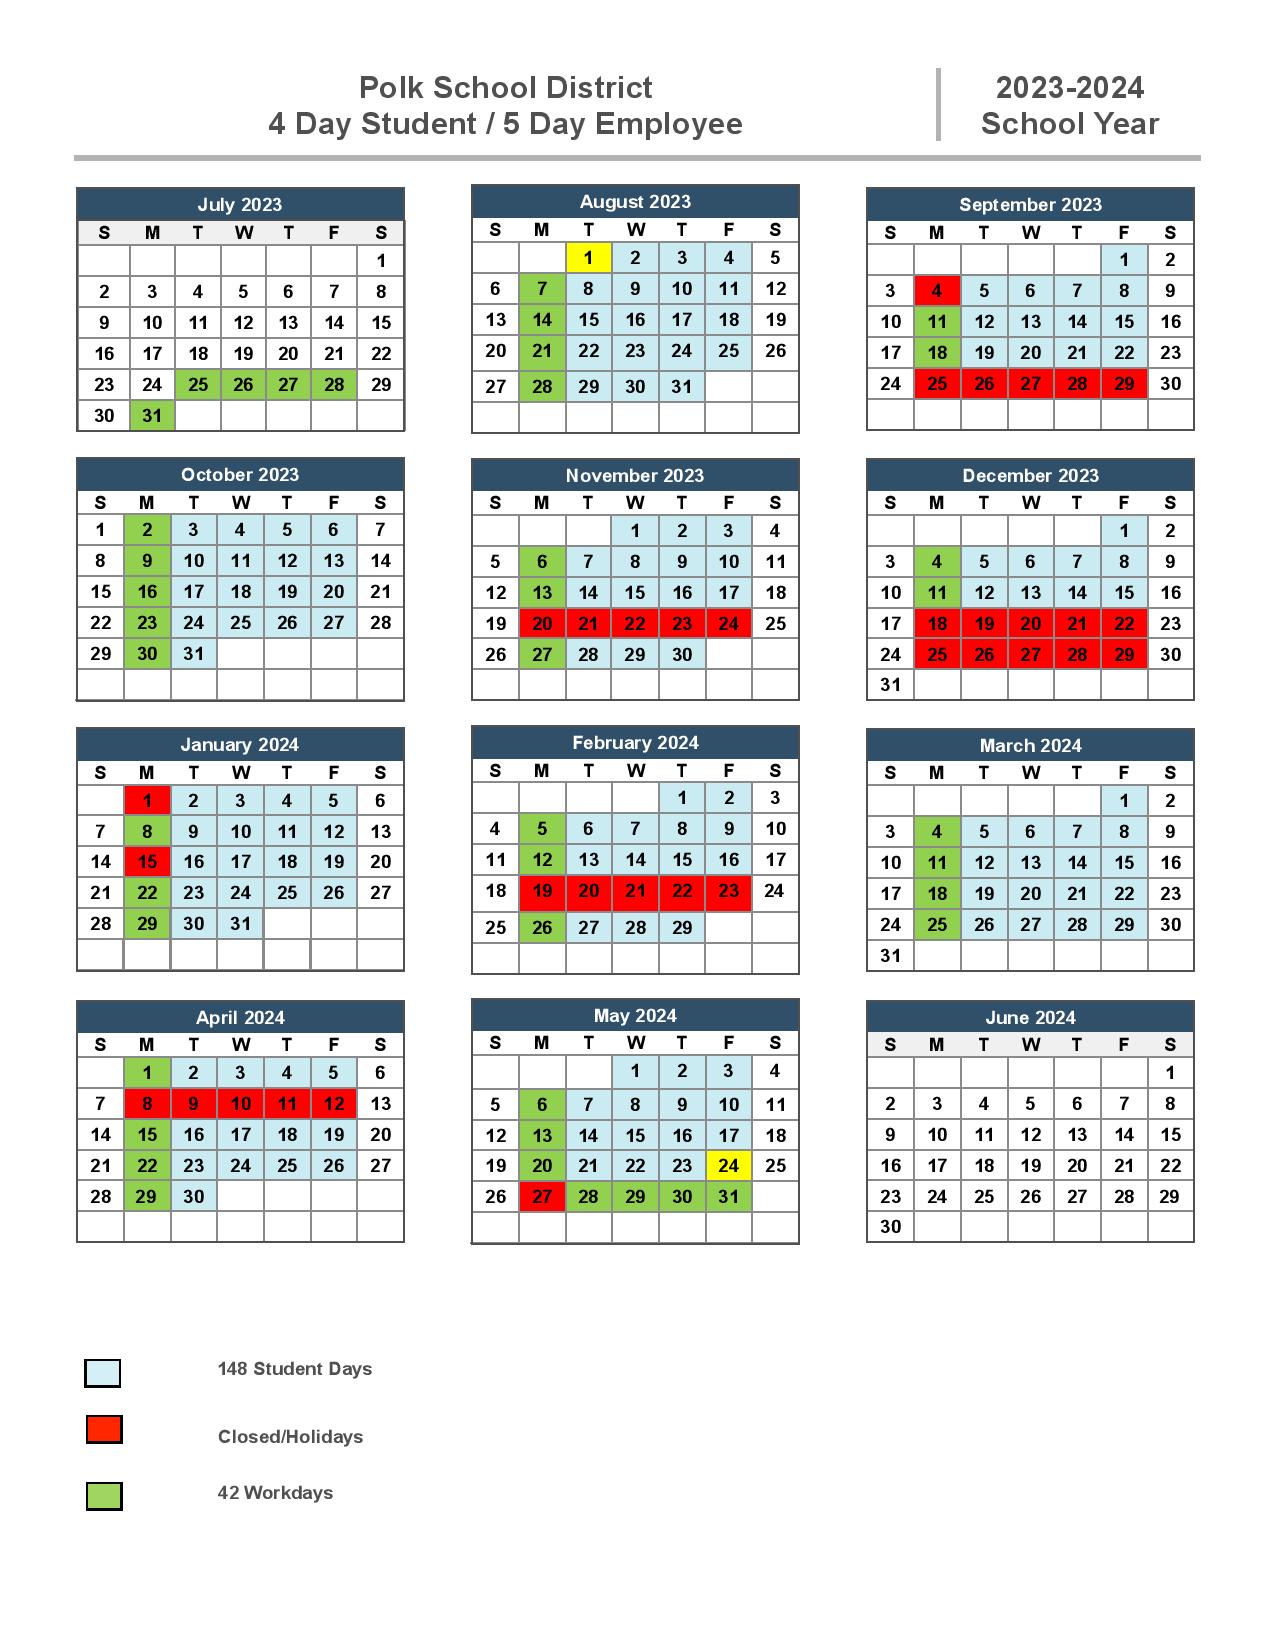 polk-county-schools-calendar-2023-2024-in-pdf